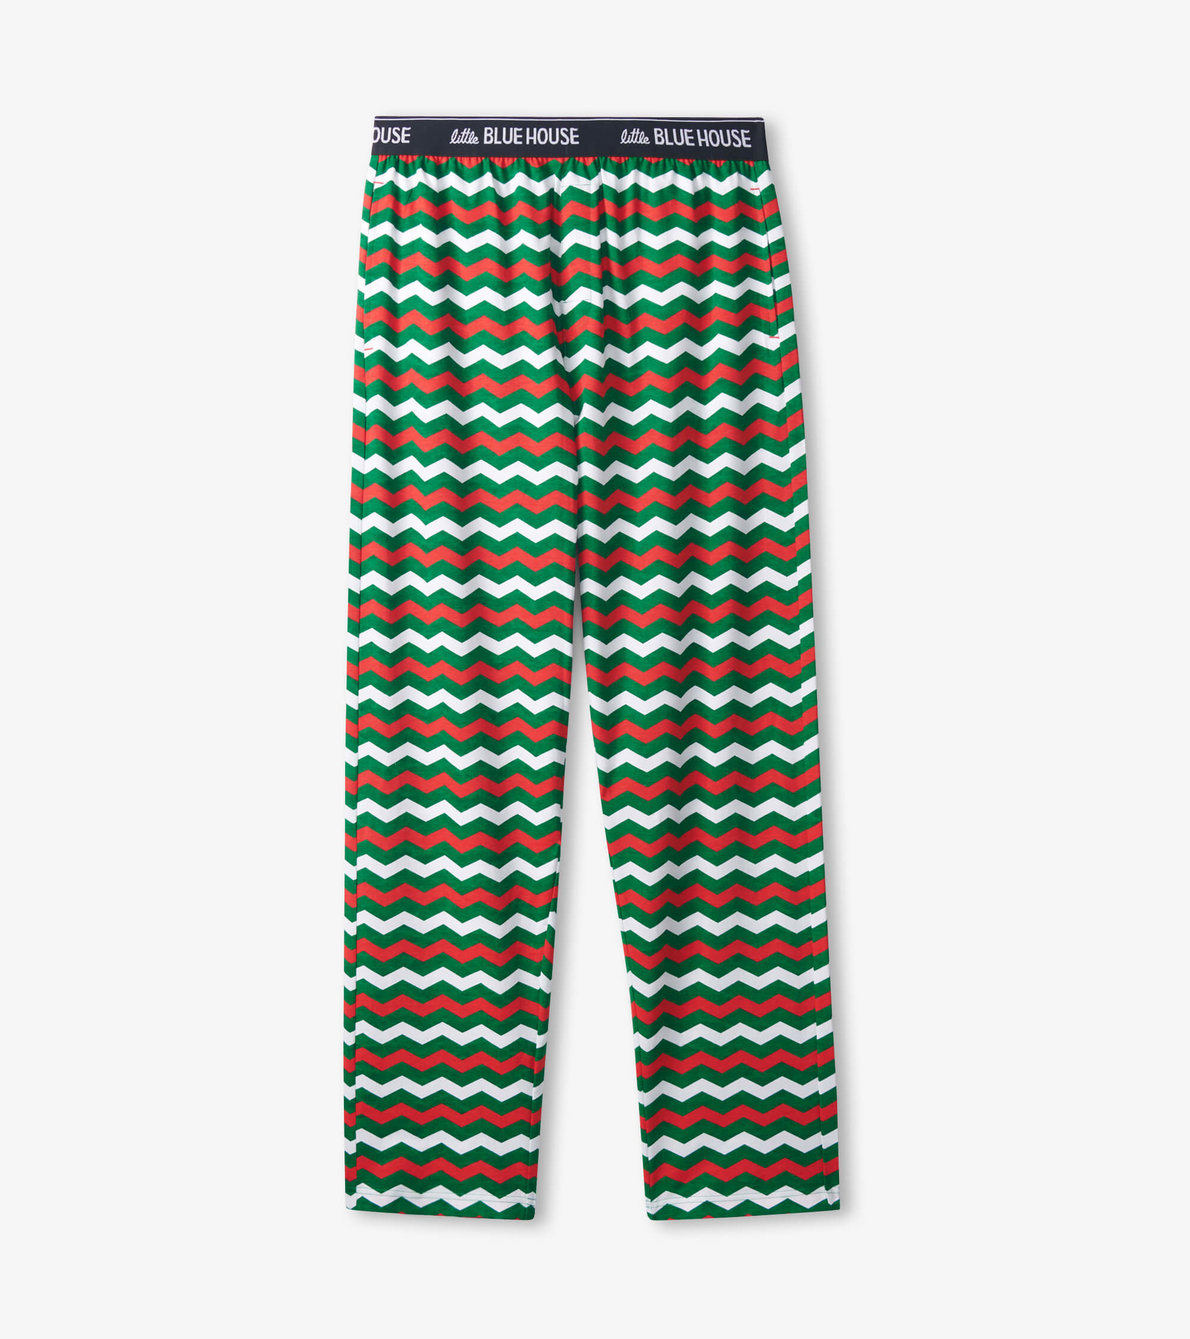 Agrandir l'image de Pantalon de pyjama en jersey pour homme – Motif zigzag de Noël